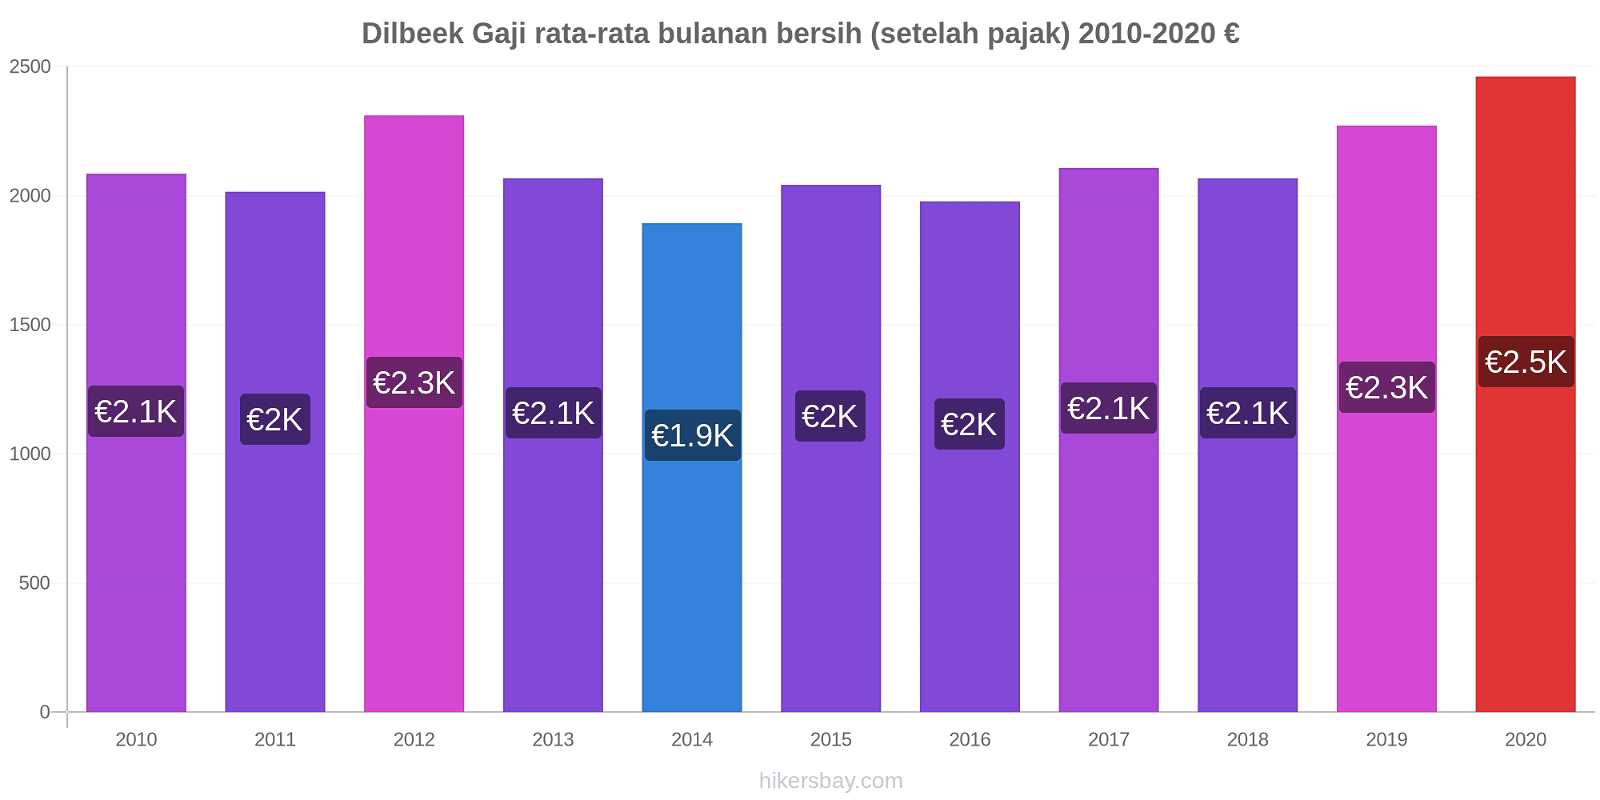 Dilbeek perubahan harga Gaji rata-rata bulanan bersih (setelah pajak) hikersbay.com